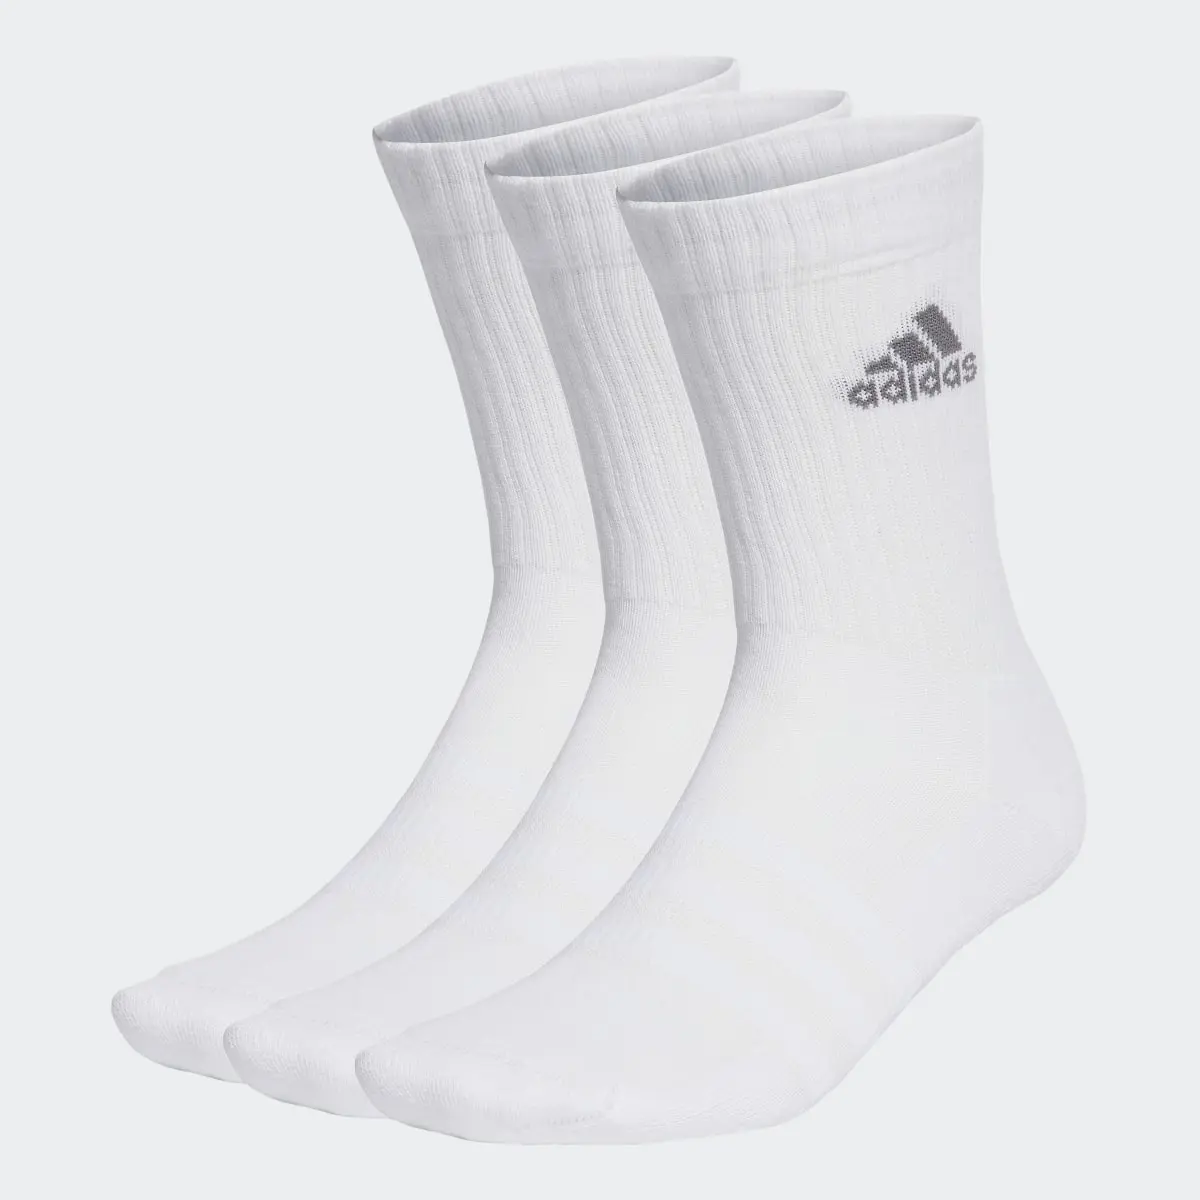 Adidas Cushioned Crew Socken, 3 Paar. 2